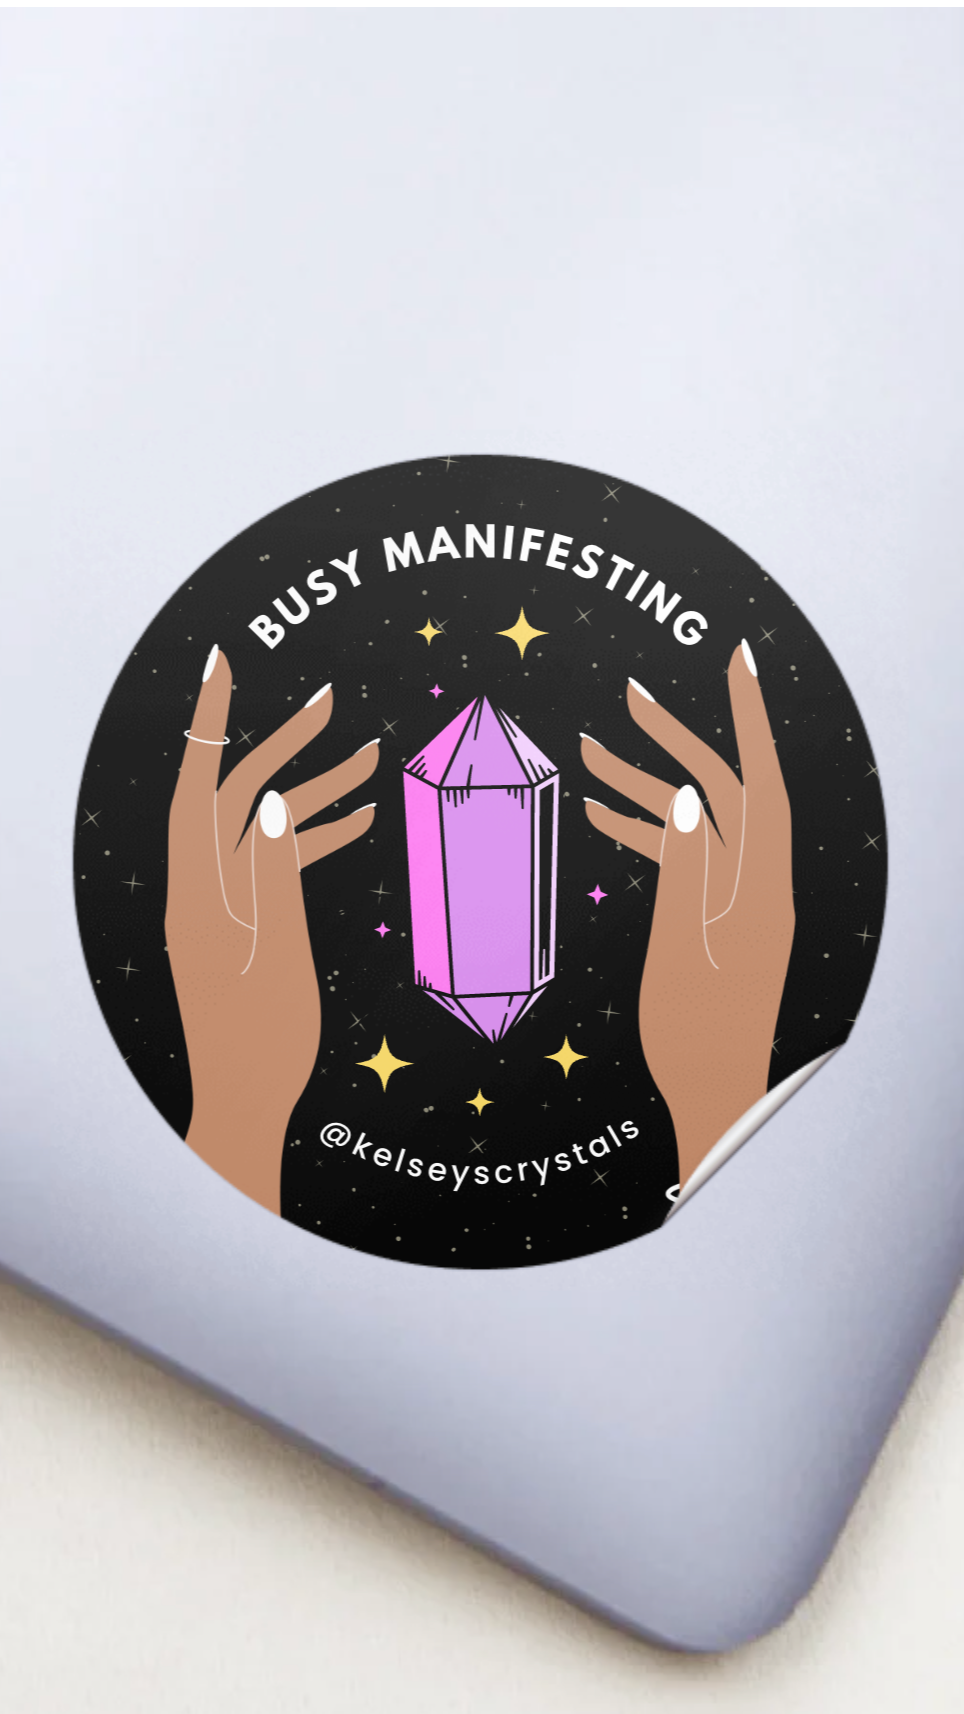 Busy Manifesting Sticker (Old Branding)